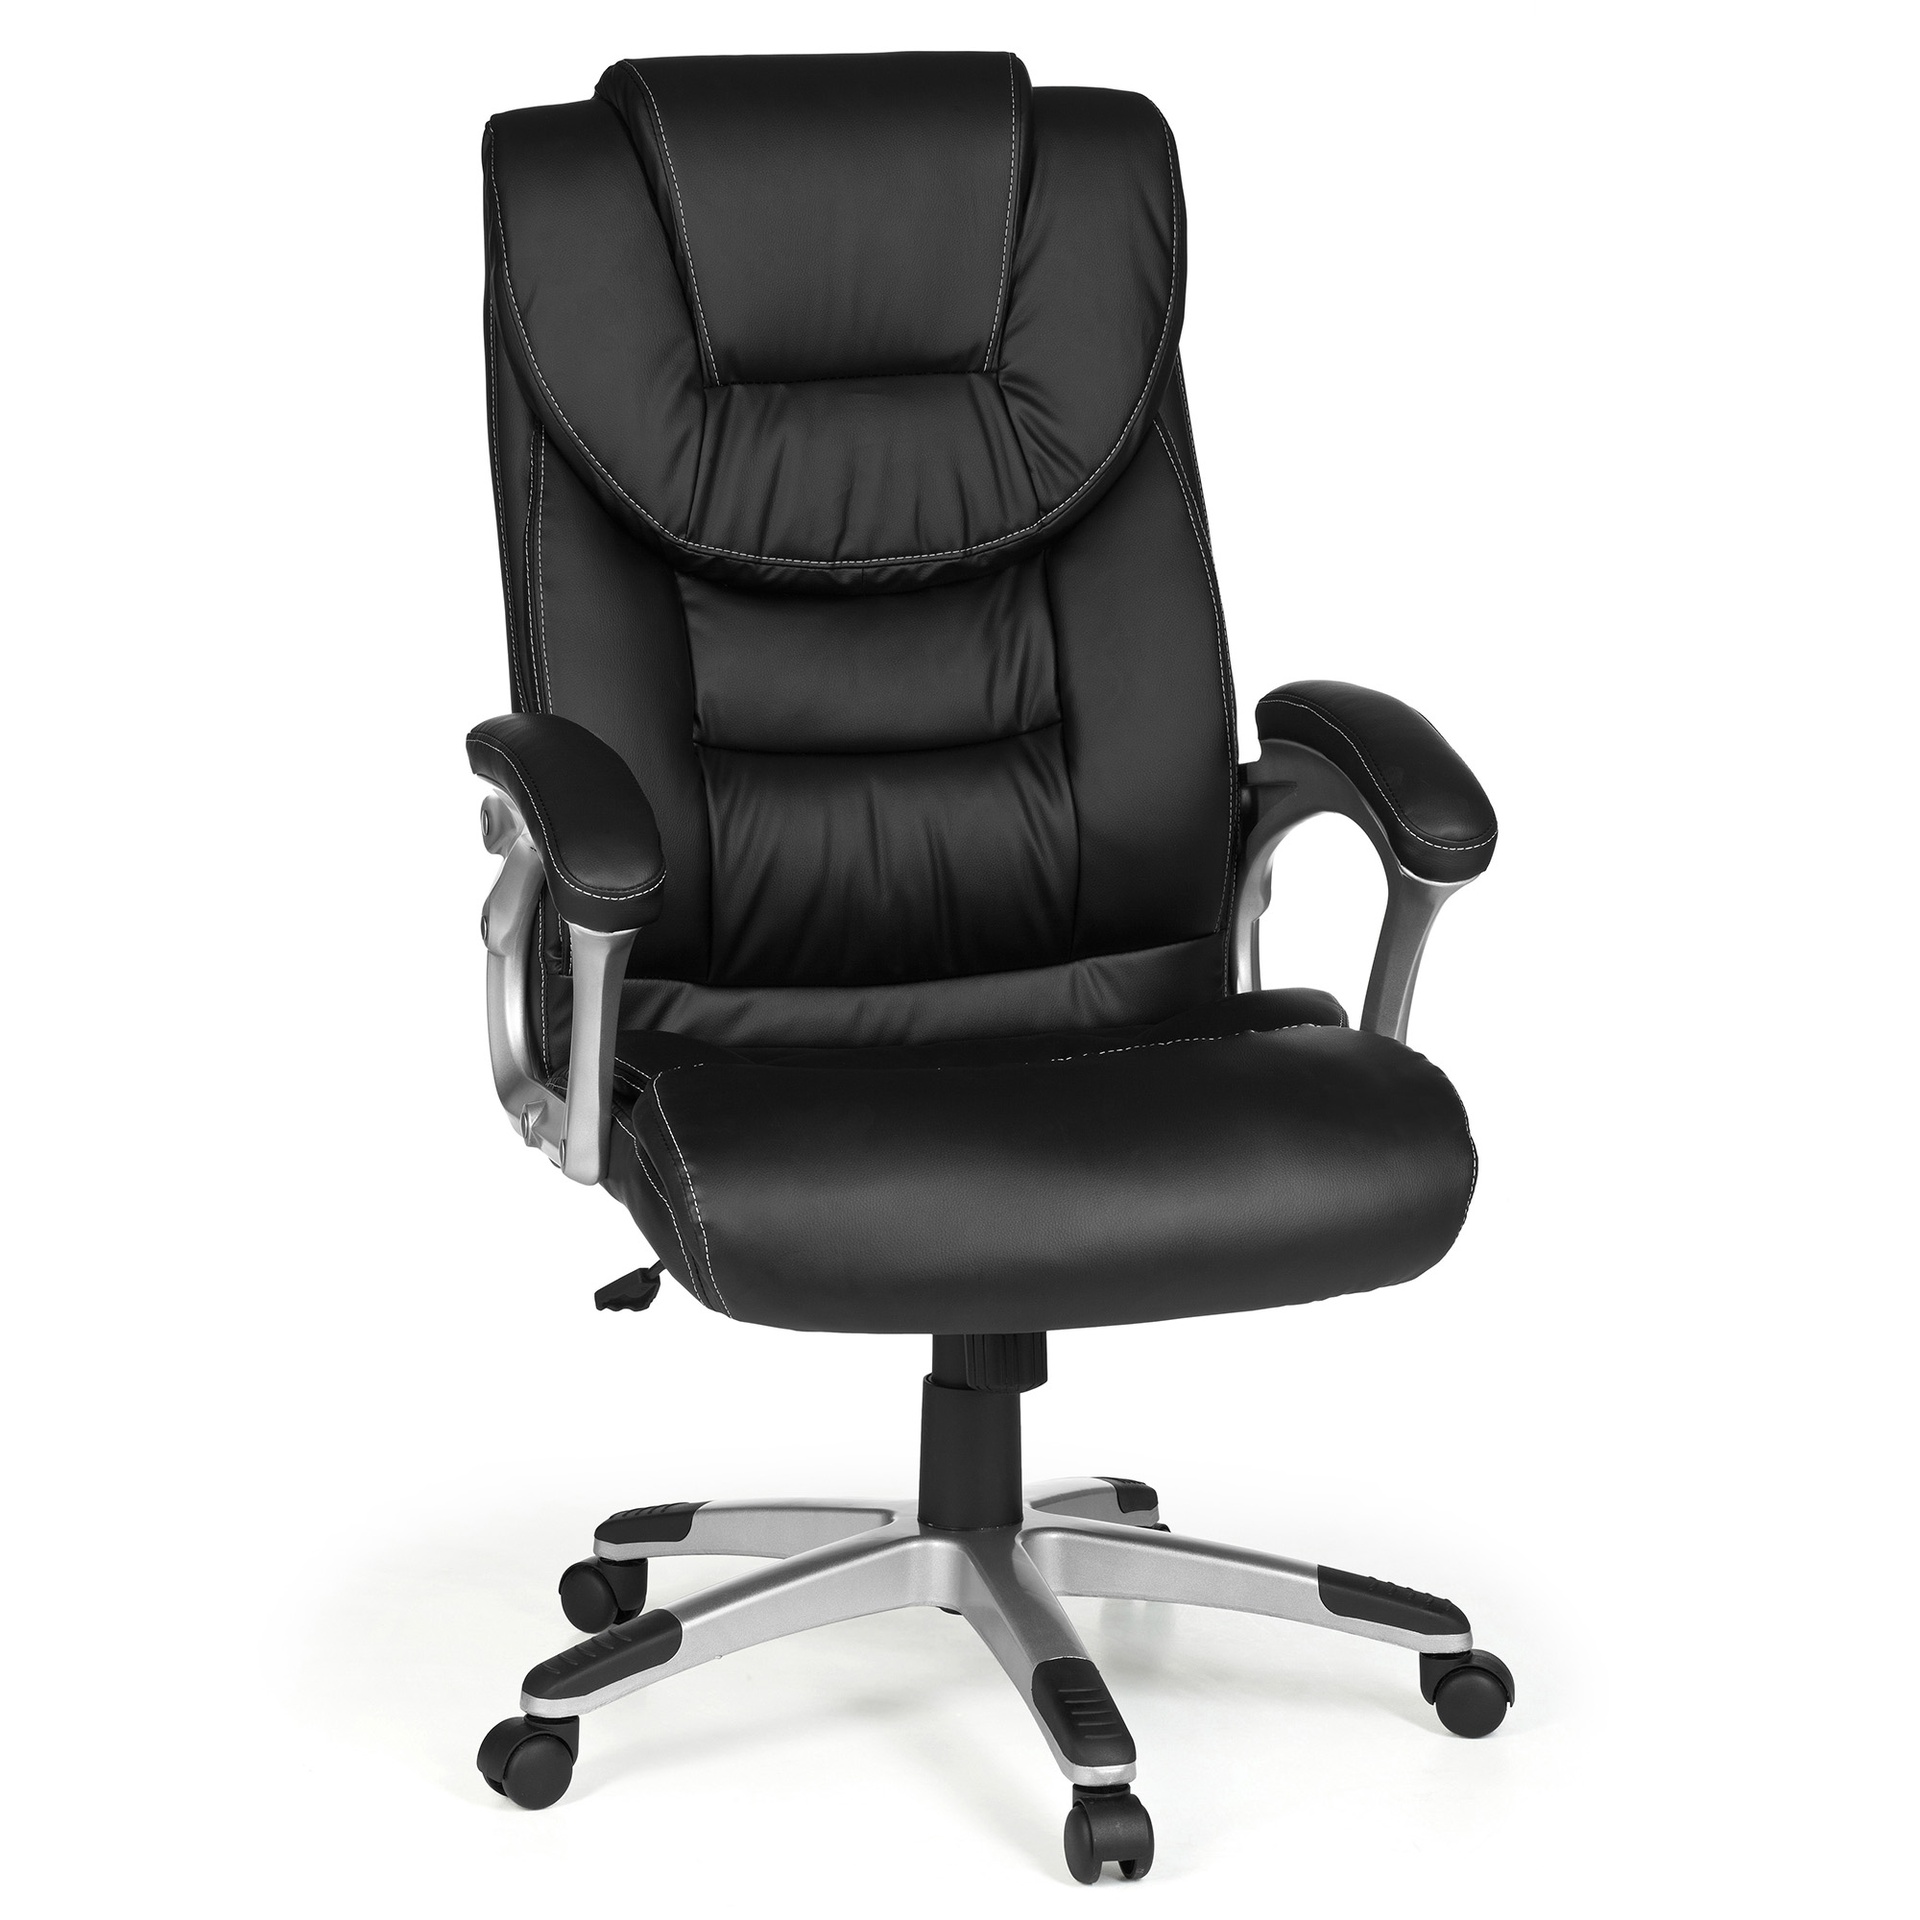 [A09439] Chaise de bureau Madrid simili cuir noir ergonomique avec appui-tête